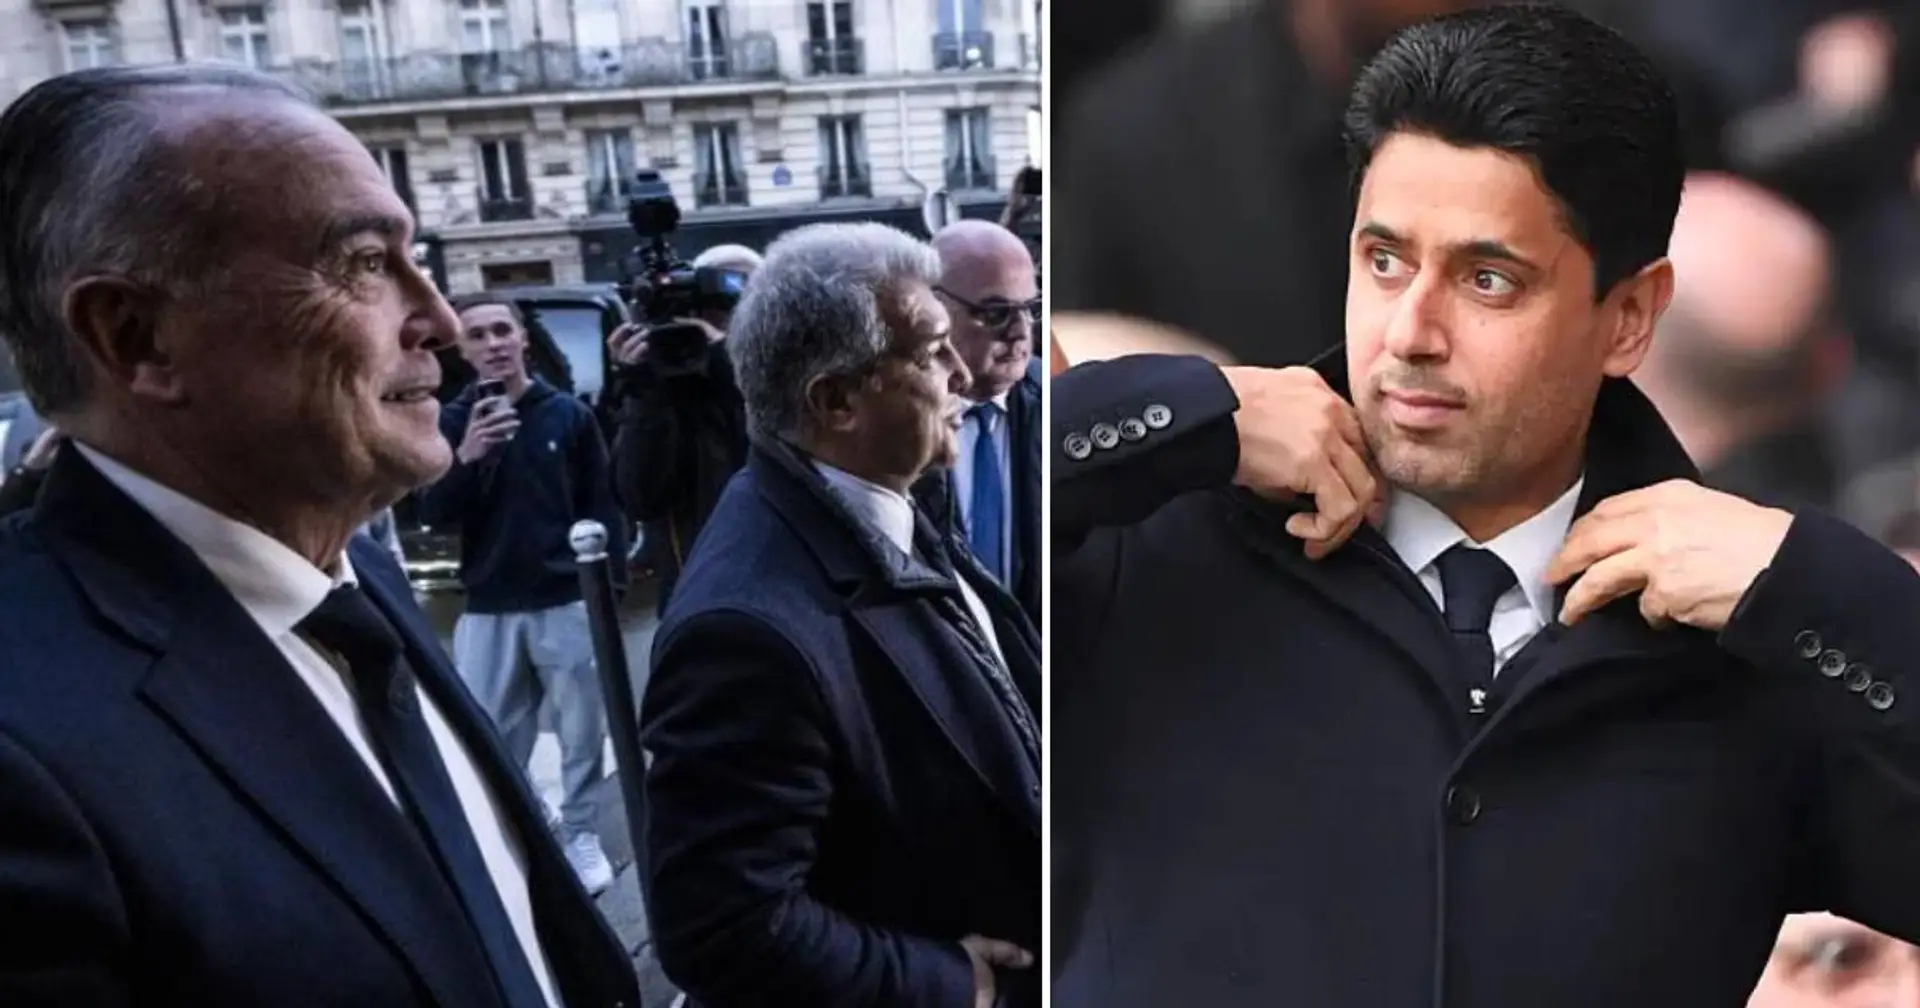 Le président du PSG, Nasser al-Khelaifi, manque un dîner avec les dirigeants du Barça - la raison dévoilée